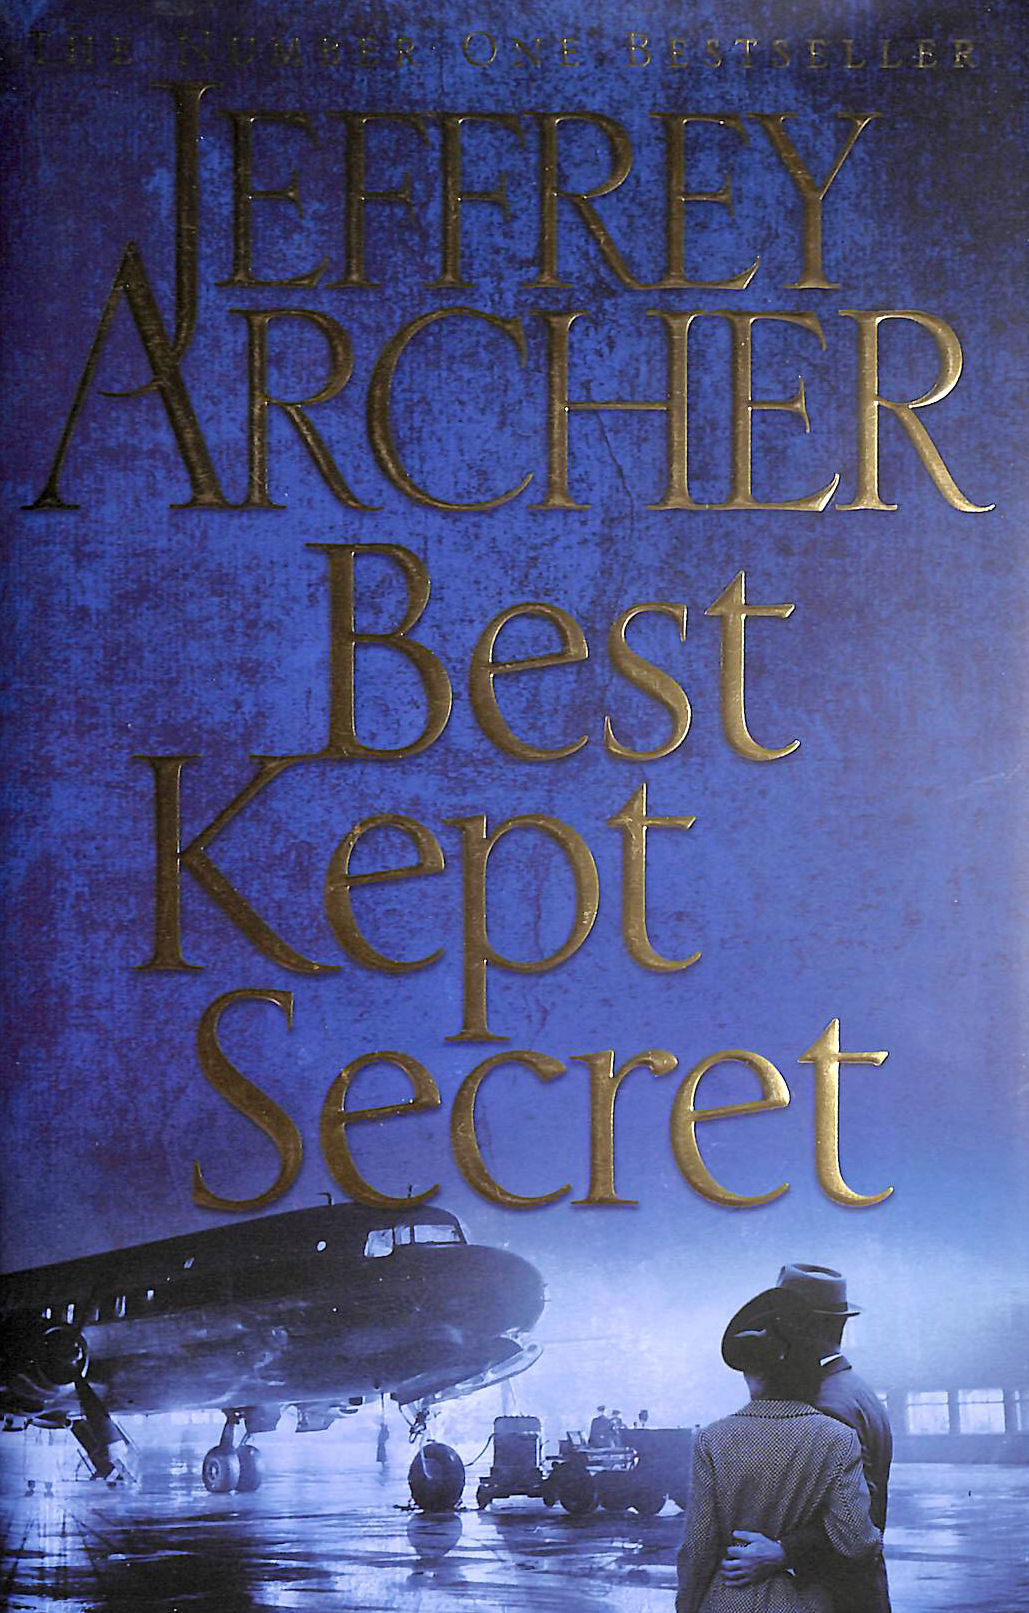 JEFFREY ARCHER - Best Kept Secret (The Clifton Chronicles)